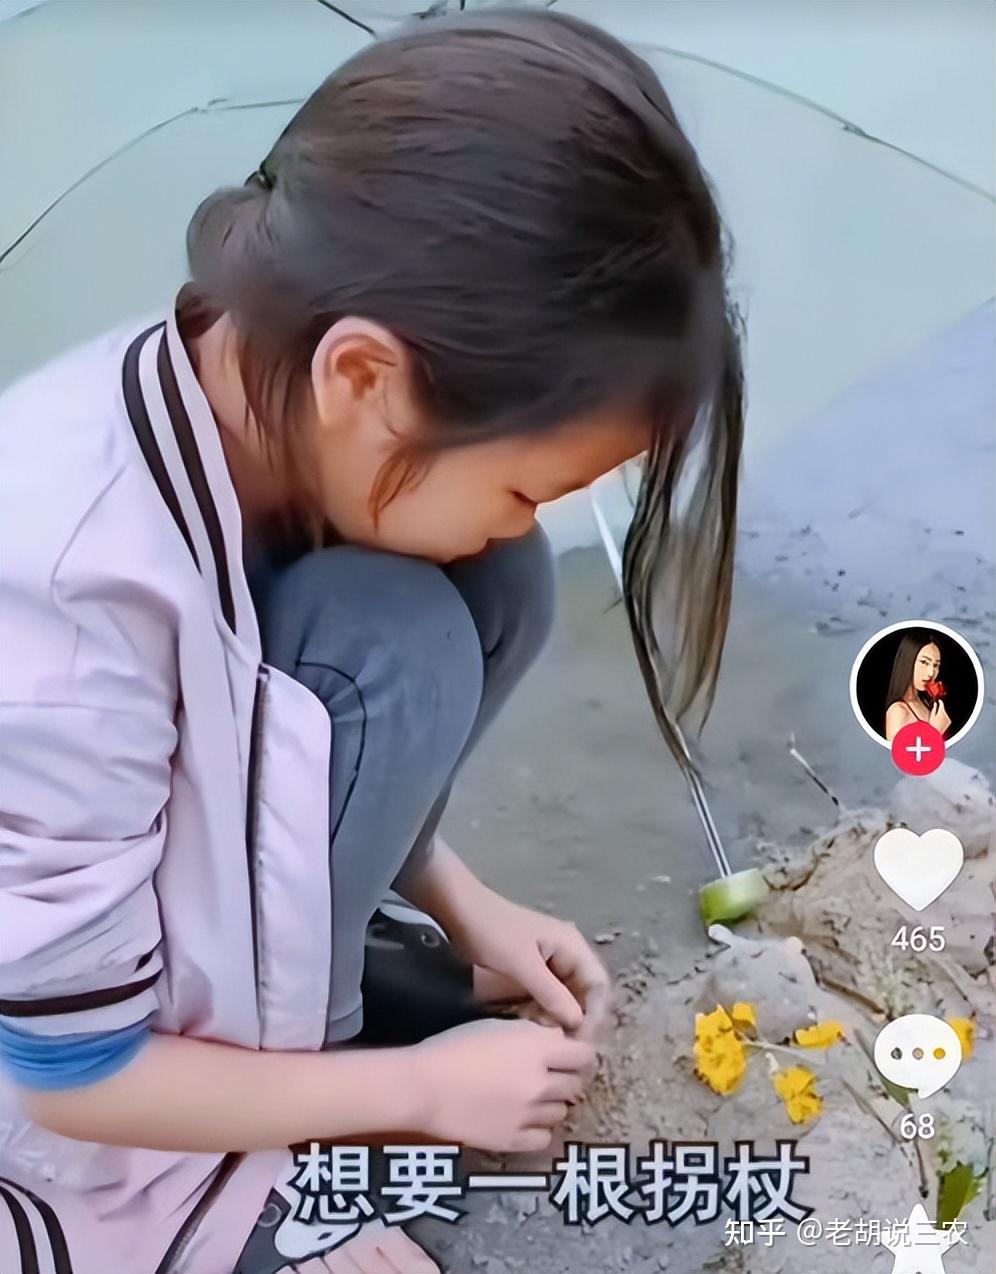 视频显示:一位七八岁的小女孩蹲在一堆沙土旁,她先是将一部分沙土从